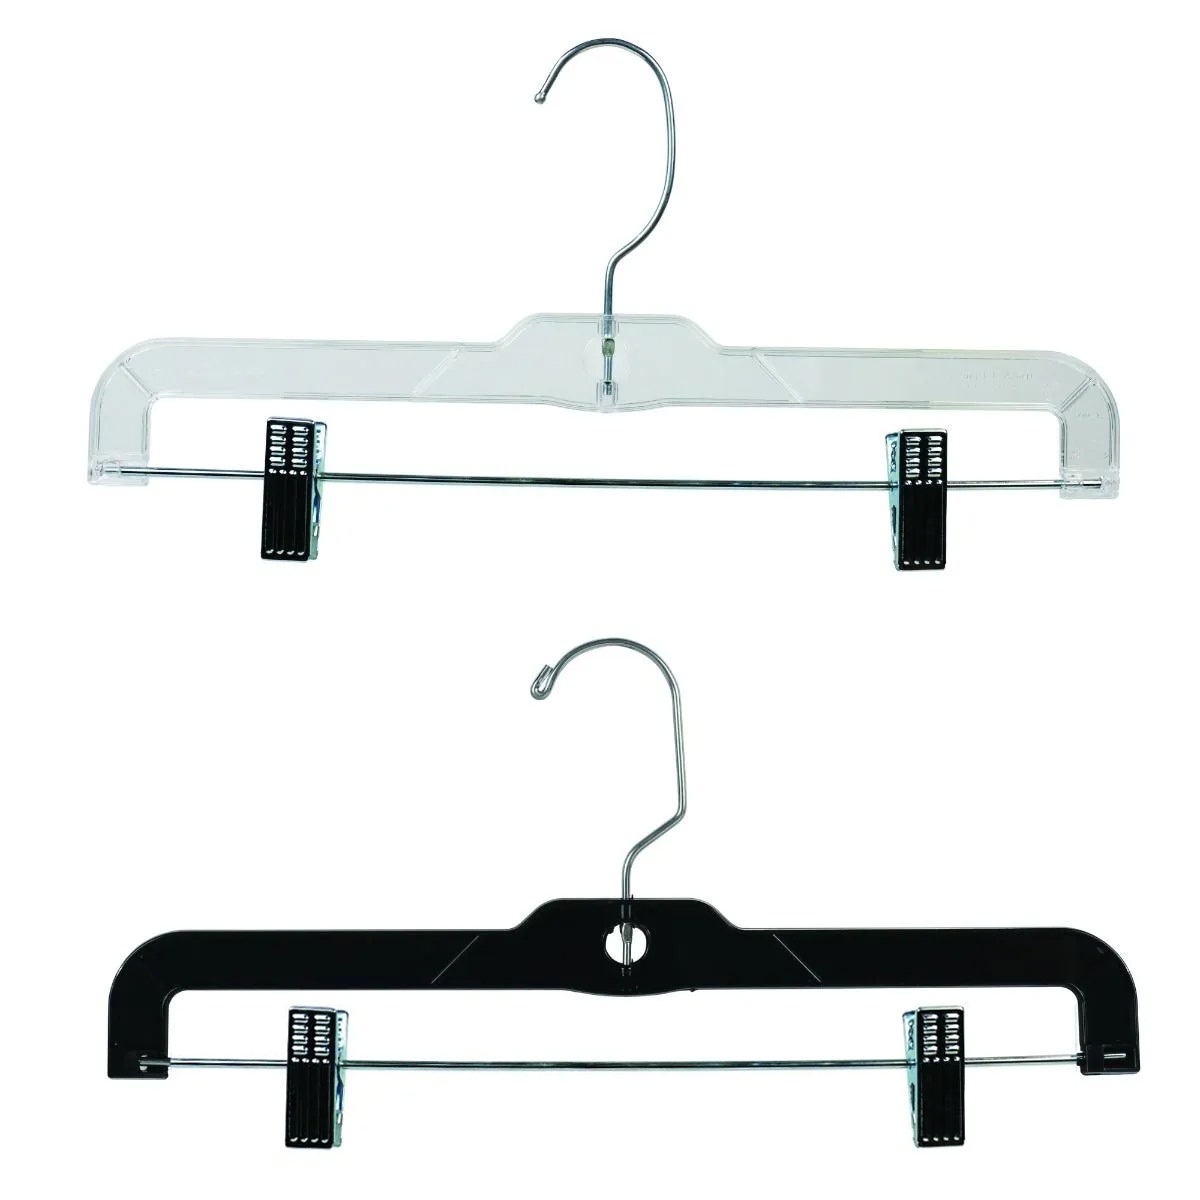 14" Pant Hangers | Black & Clear | 100 Pk - Eddie's Hang-Up Display Ltd.